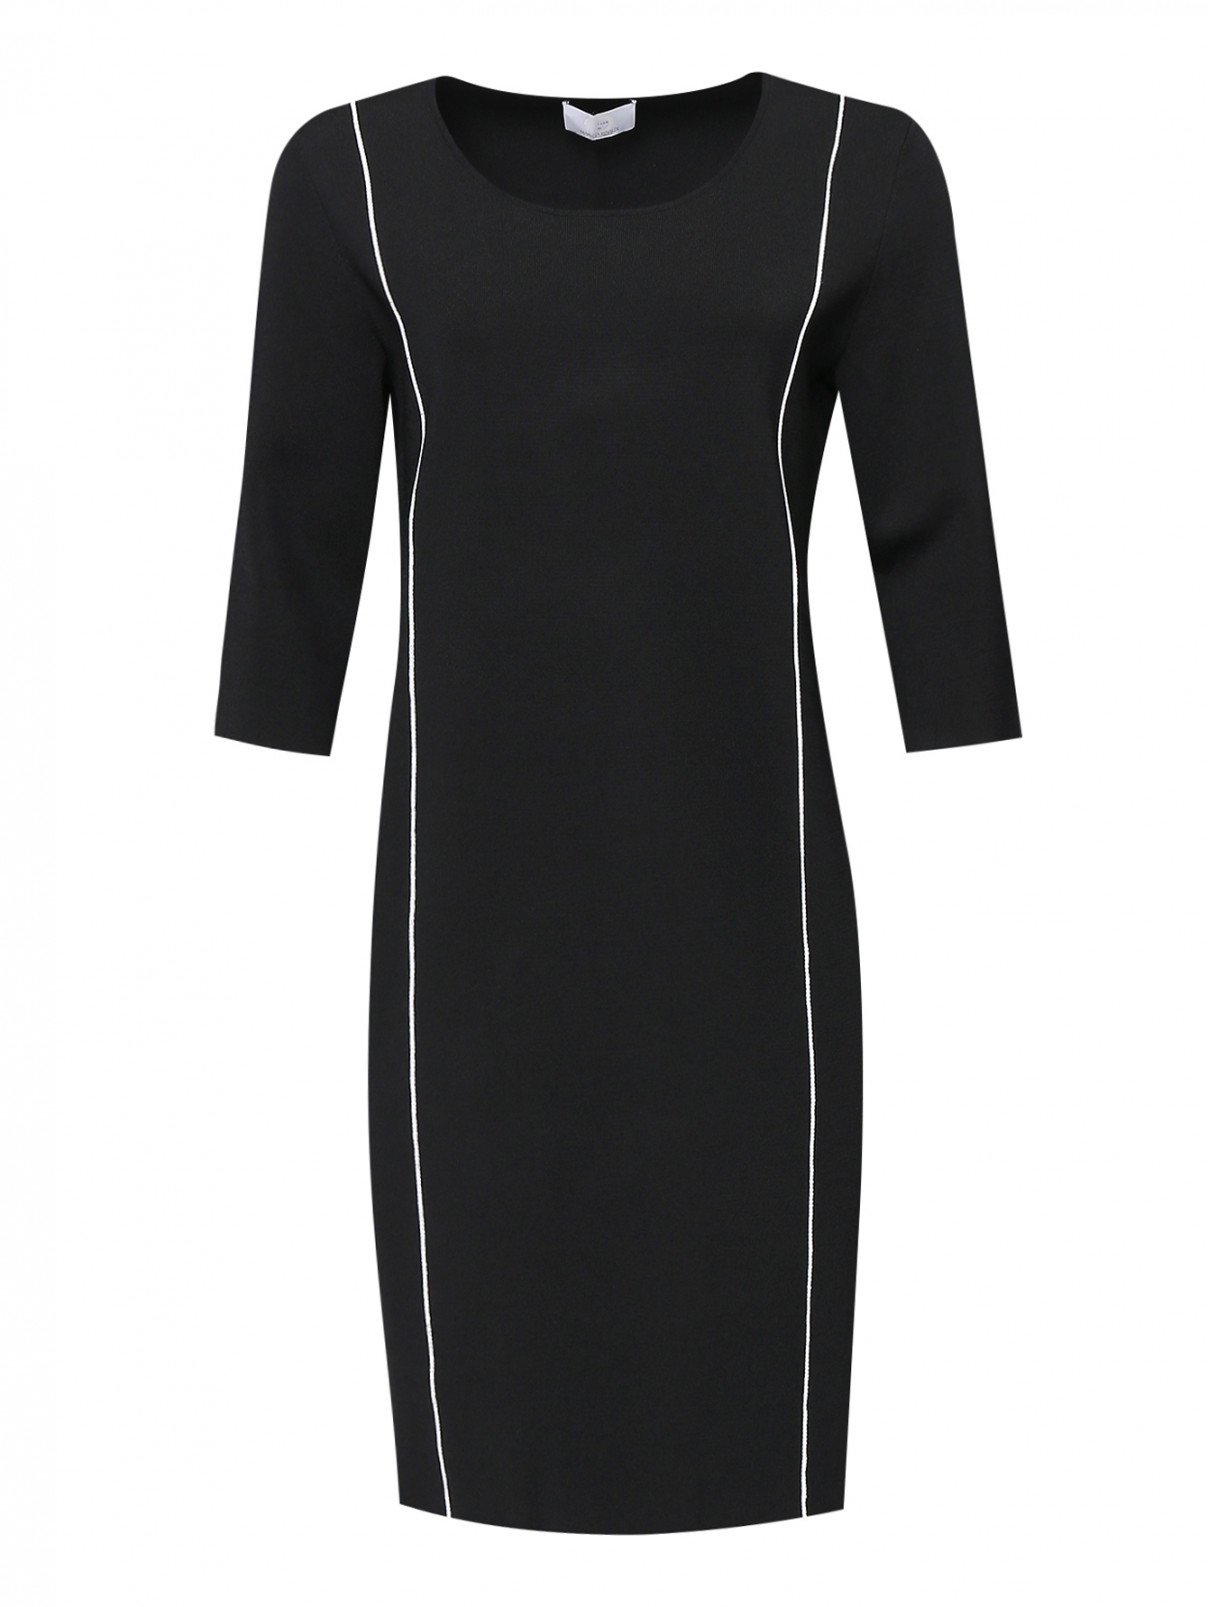 Платье-футляр трикотажное с контрастной отделкой Marina Rinaldi  –  Общий вид  – Цвет:  Черный